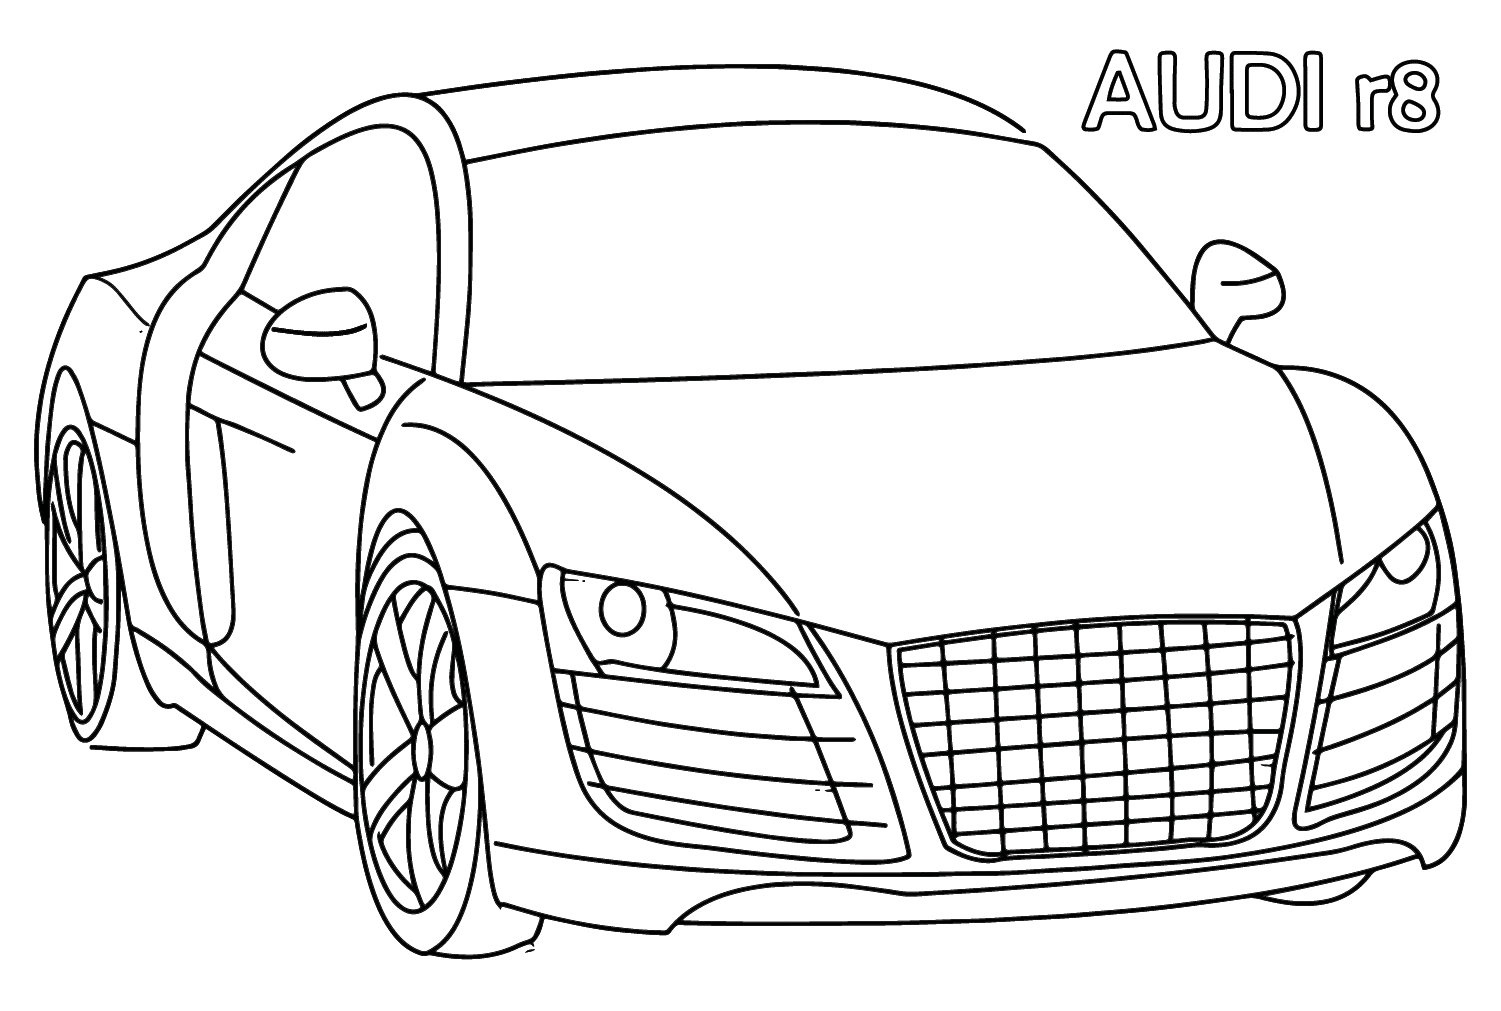 Audi R8 kleurplaat van Audi